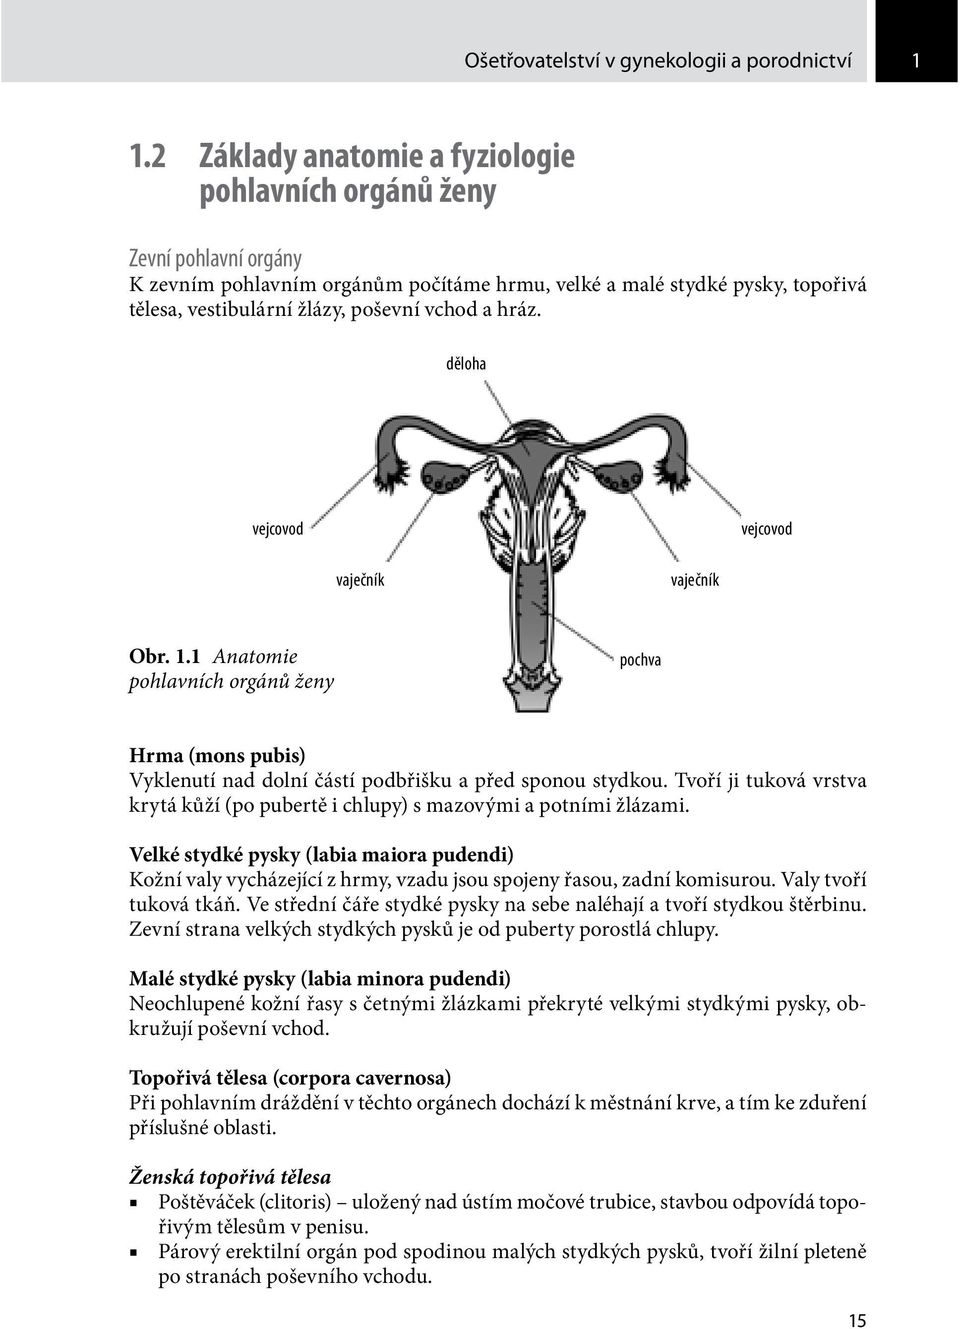 hráz. děloha vejcovod vejcovod vaječník vaječník Obr. 1.1 Anatomie pohlavních orgánů ženy pochva Hrma (mons pubis) Vyklenutí nad dolní částí podbřišku a před sponou stydkou.